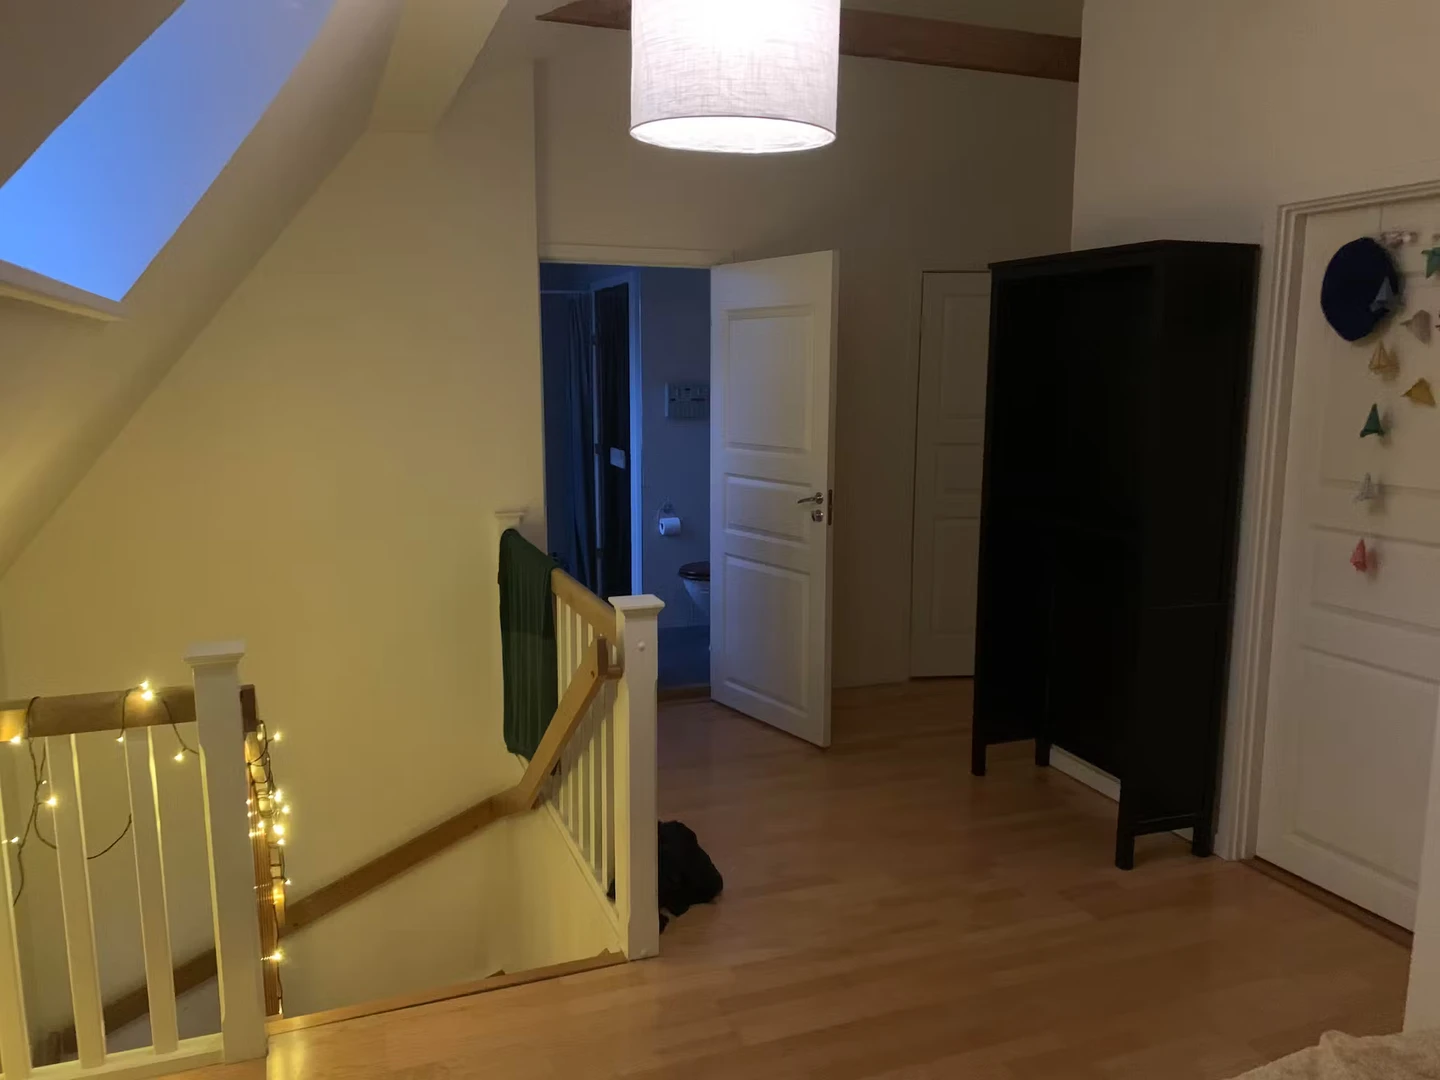 Habitación privada barata en Uppsala